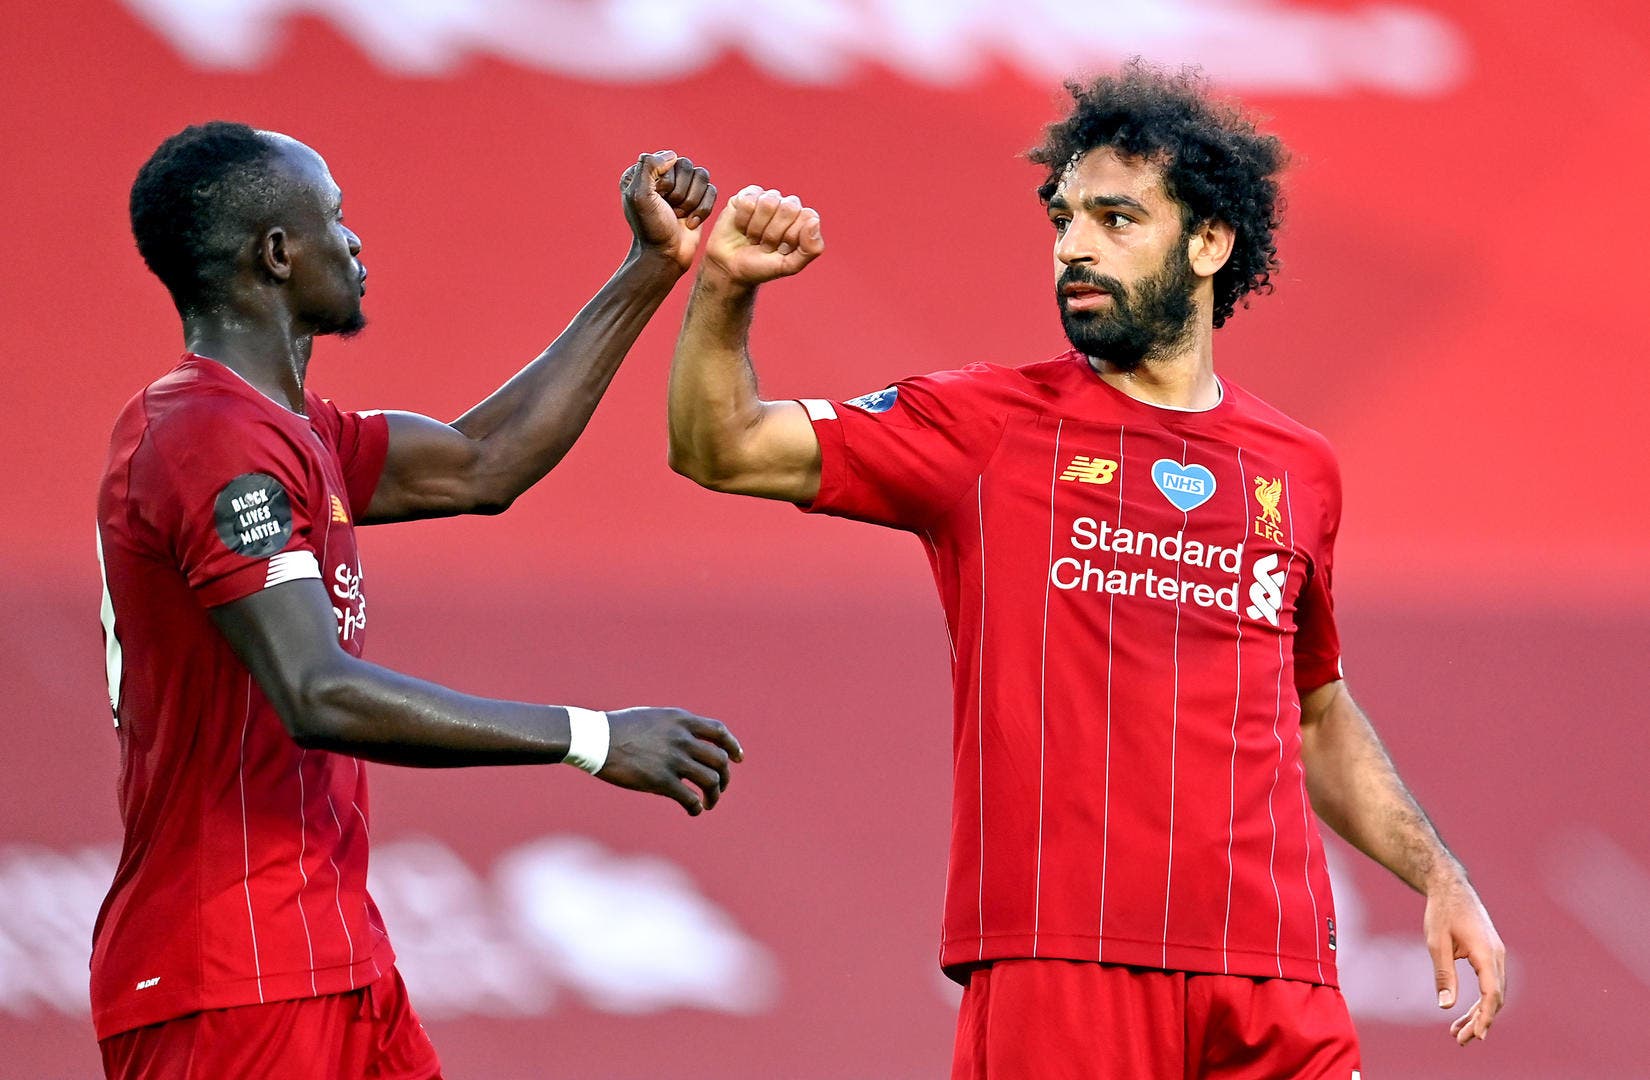 Un ancien joueur révèle les raisons des belles performances de Mané et Salah à Liverpool